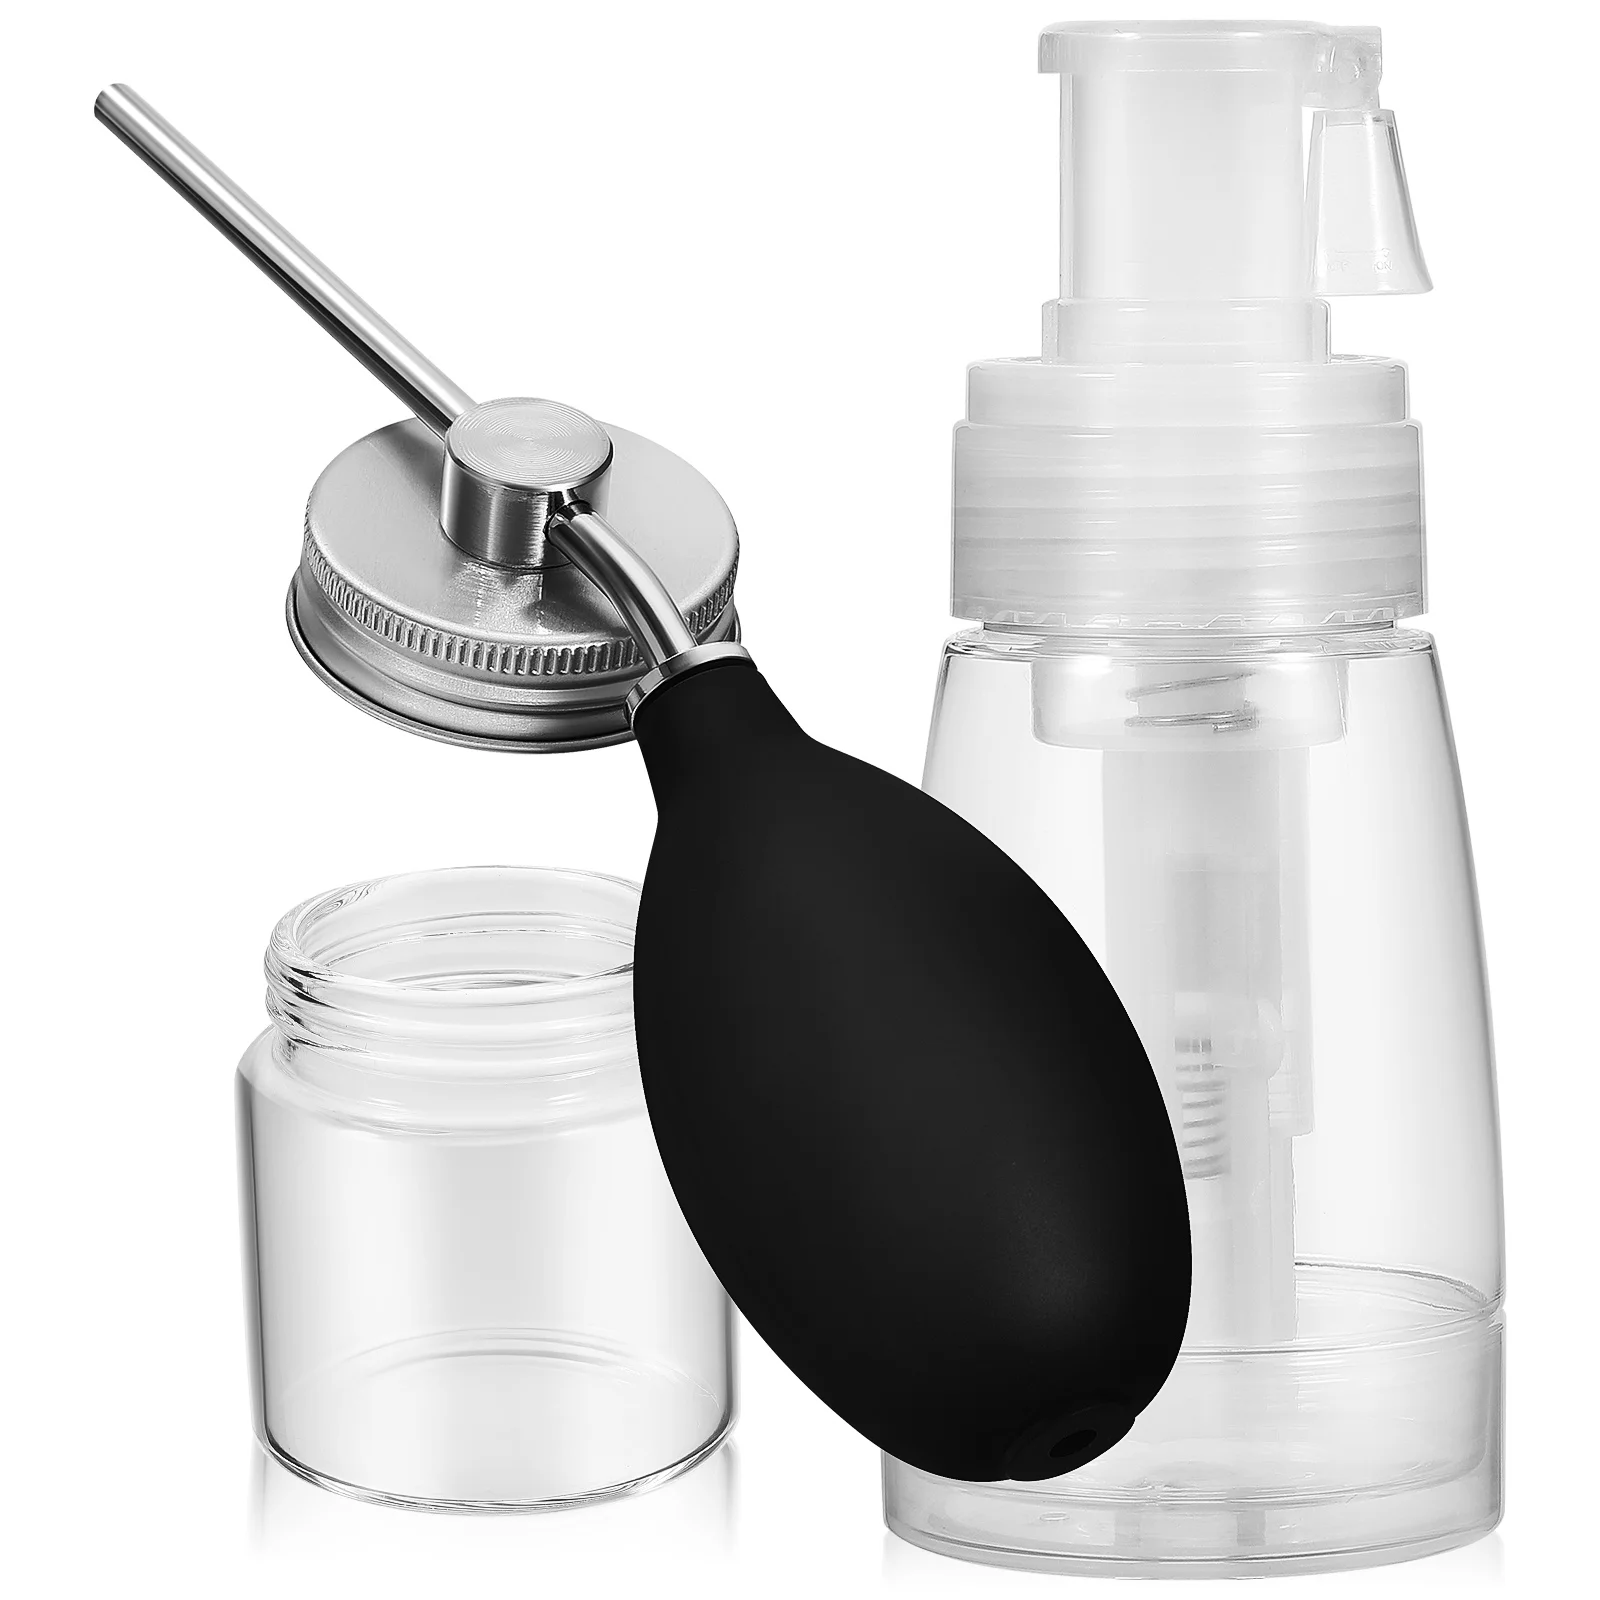 2pcs Powder Puffer Bottle Dry Powder Spray Bottle Hair Applicator Bottle Set for Hair Salon